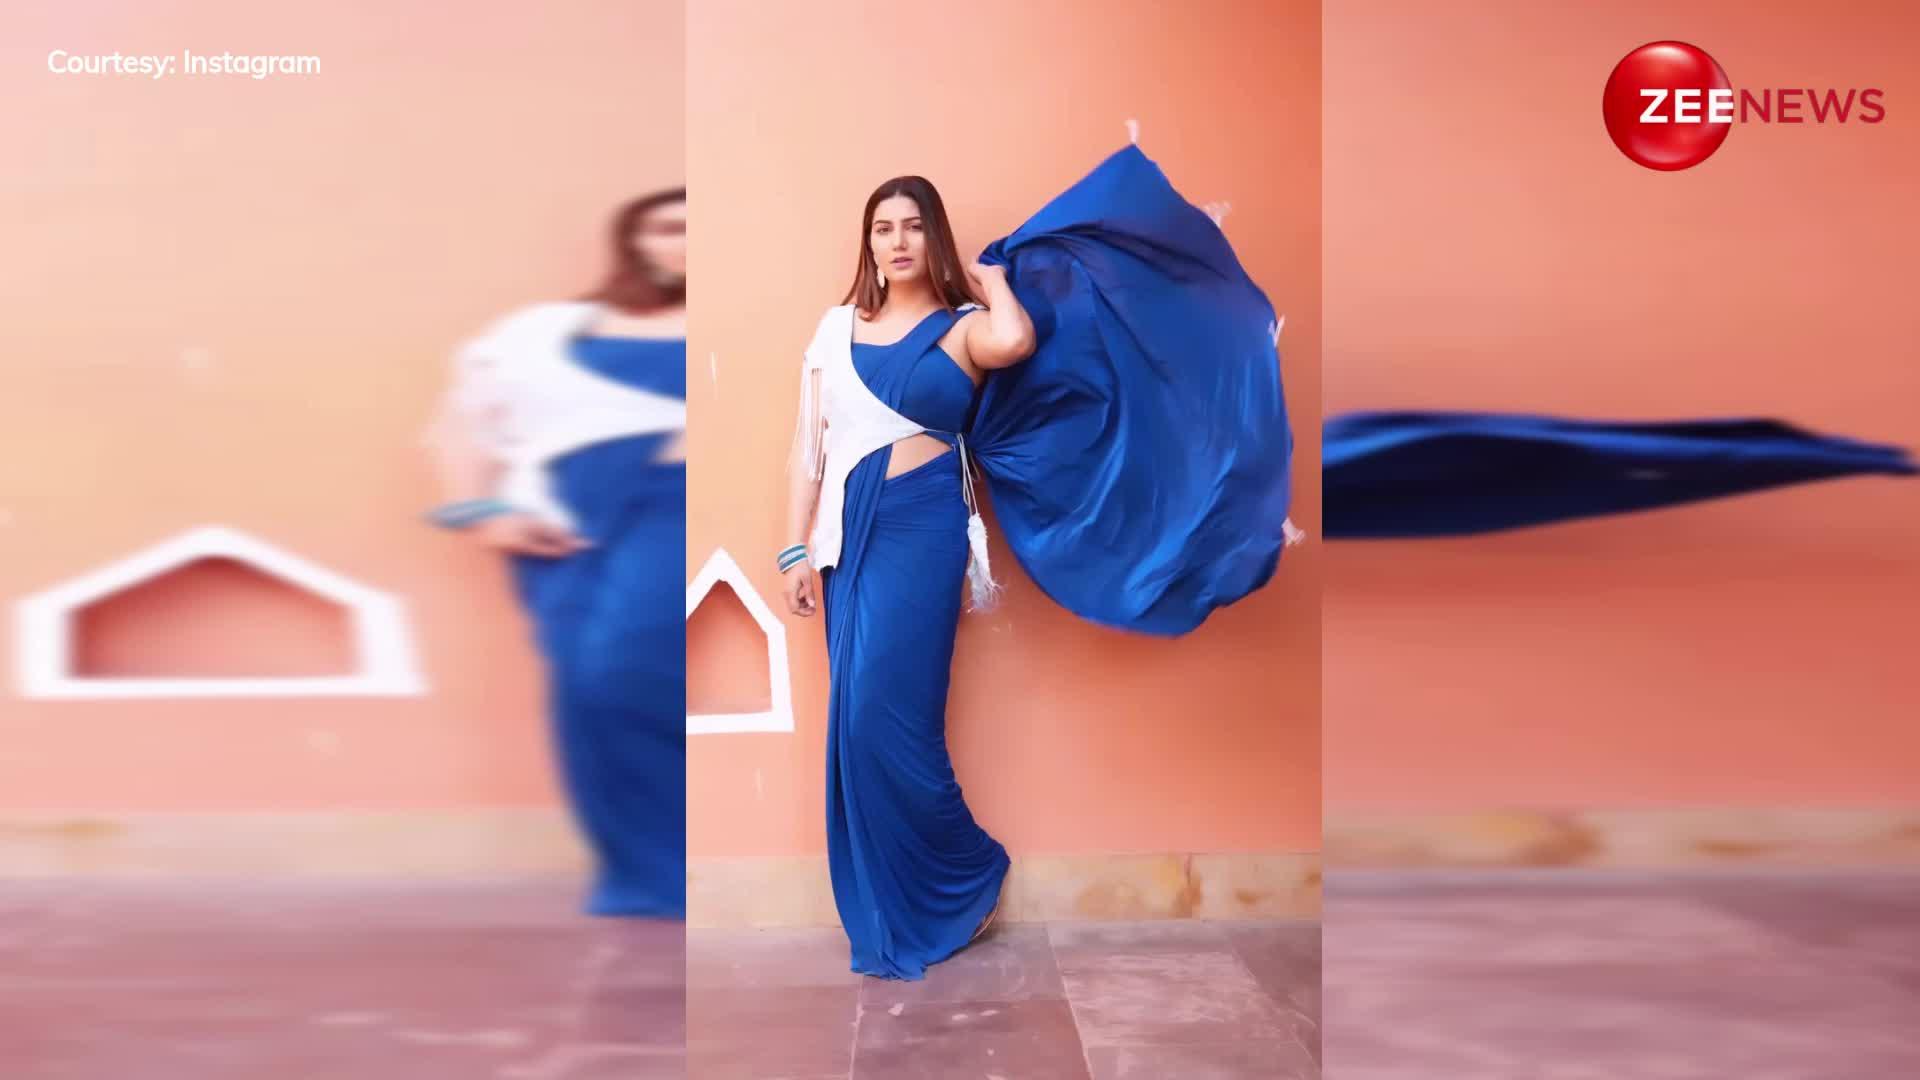 नए स्टाइल में साड़ी पहन Sapna choudhary की तरह दिखाना है अदाओं का जादू, देखें ये वीडियो